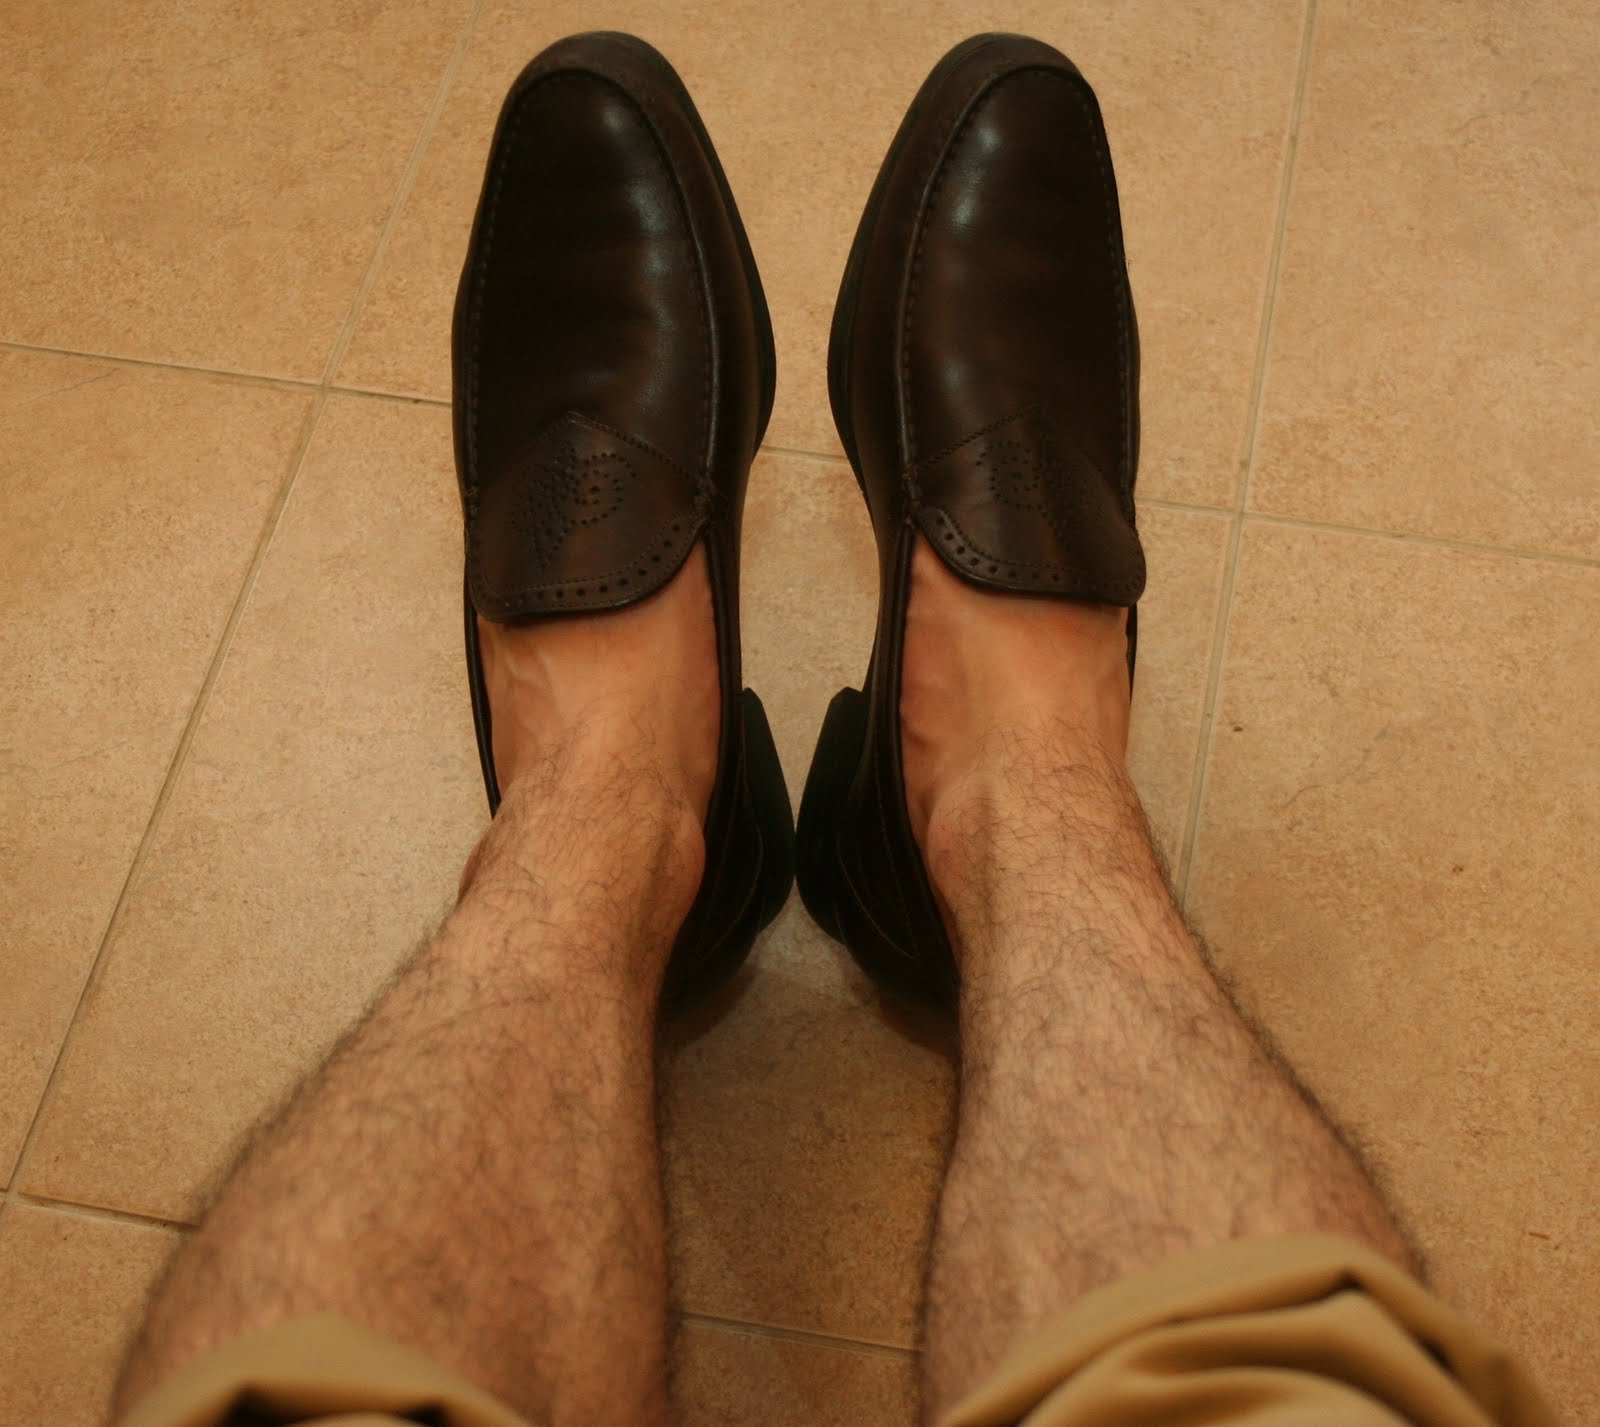 Купить стопу мужскую. Ножки мужские. Мужские ноги в туфлях. Мужские ноги в ботинках. Волосатык мужскиетноги.